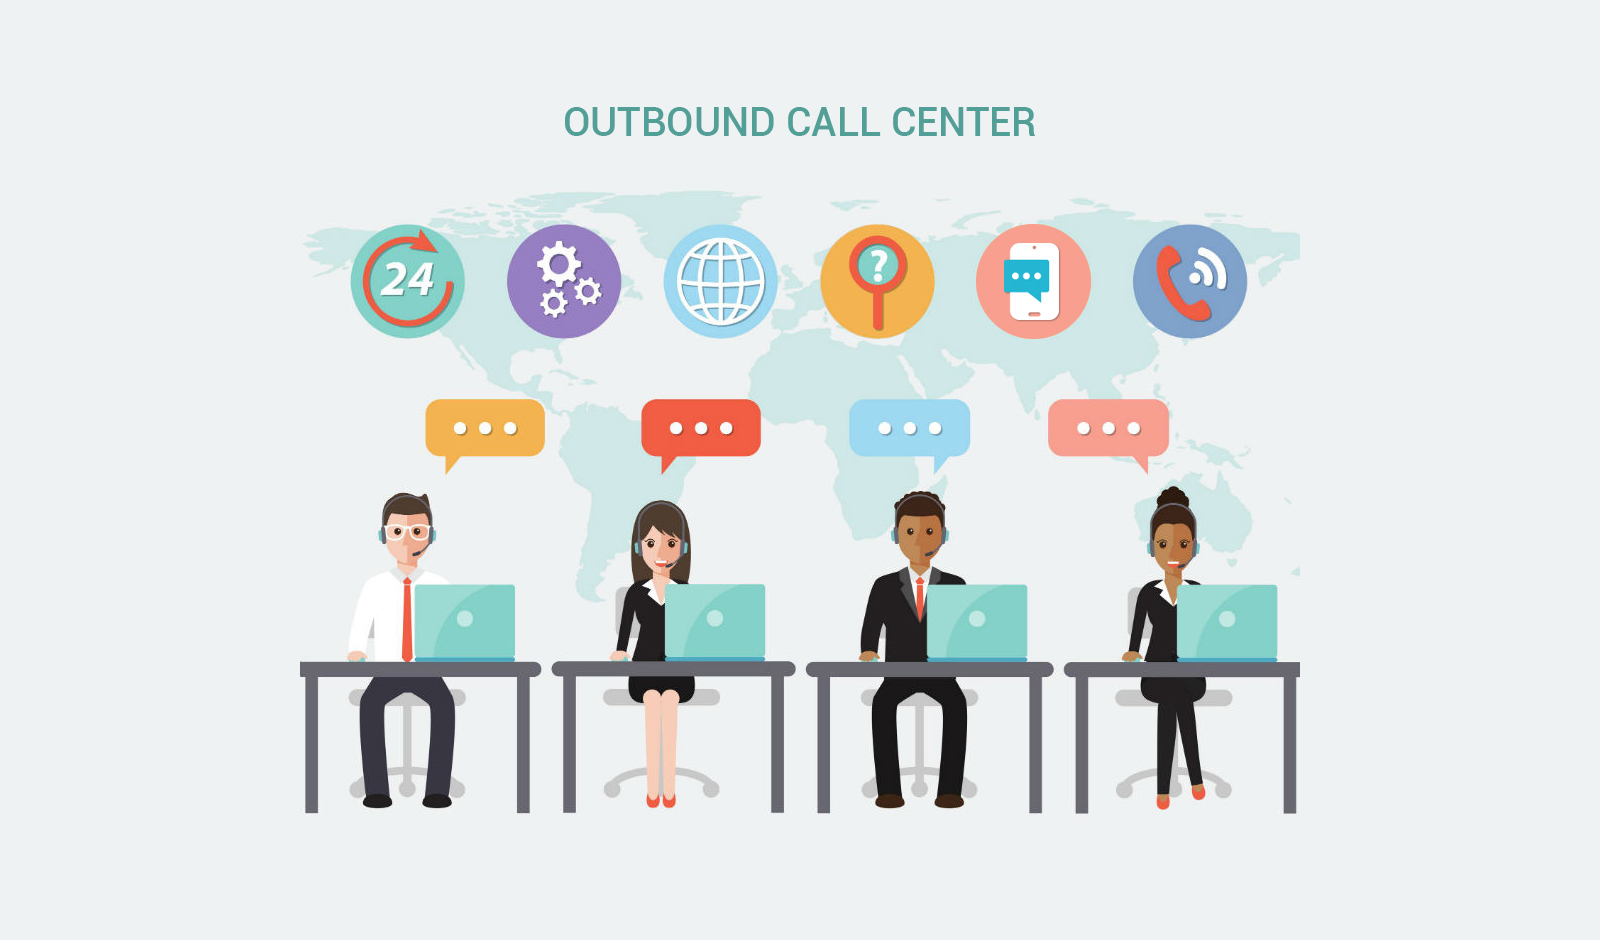 Outbound Call Center - WN Infotech